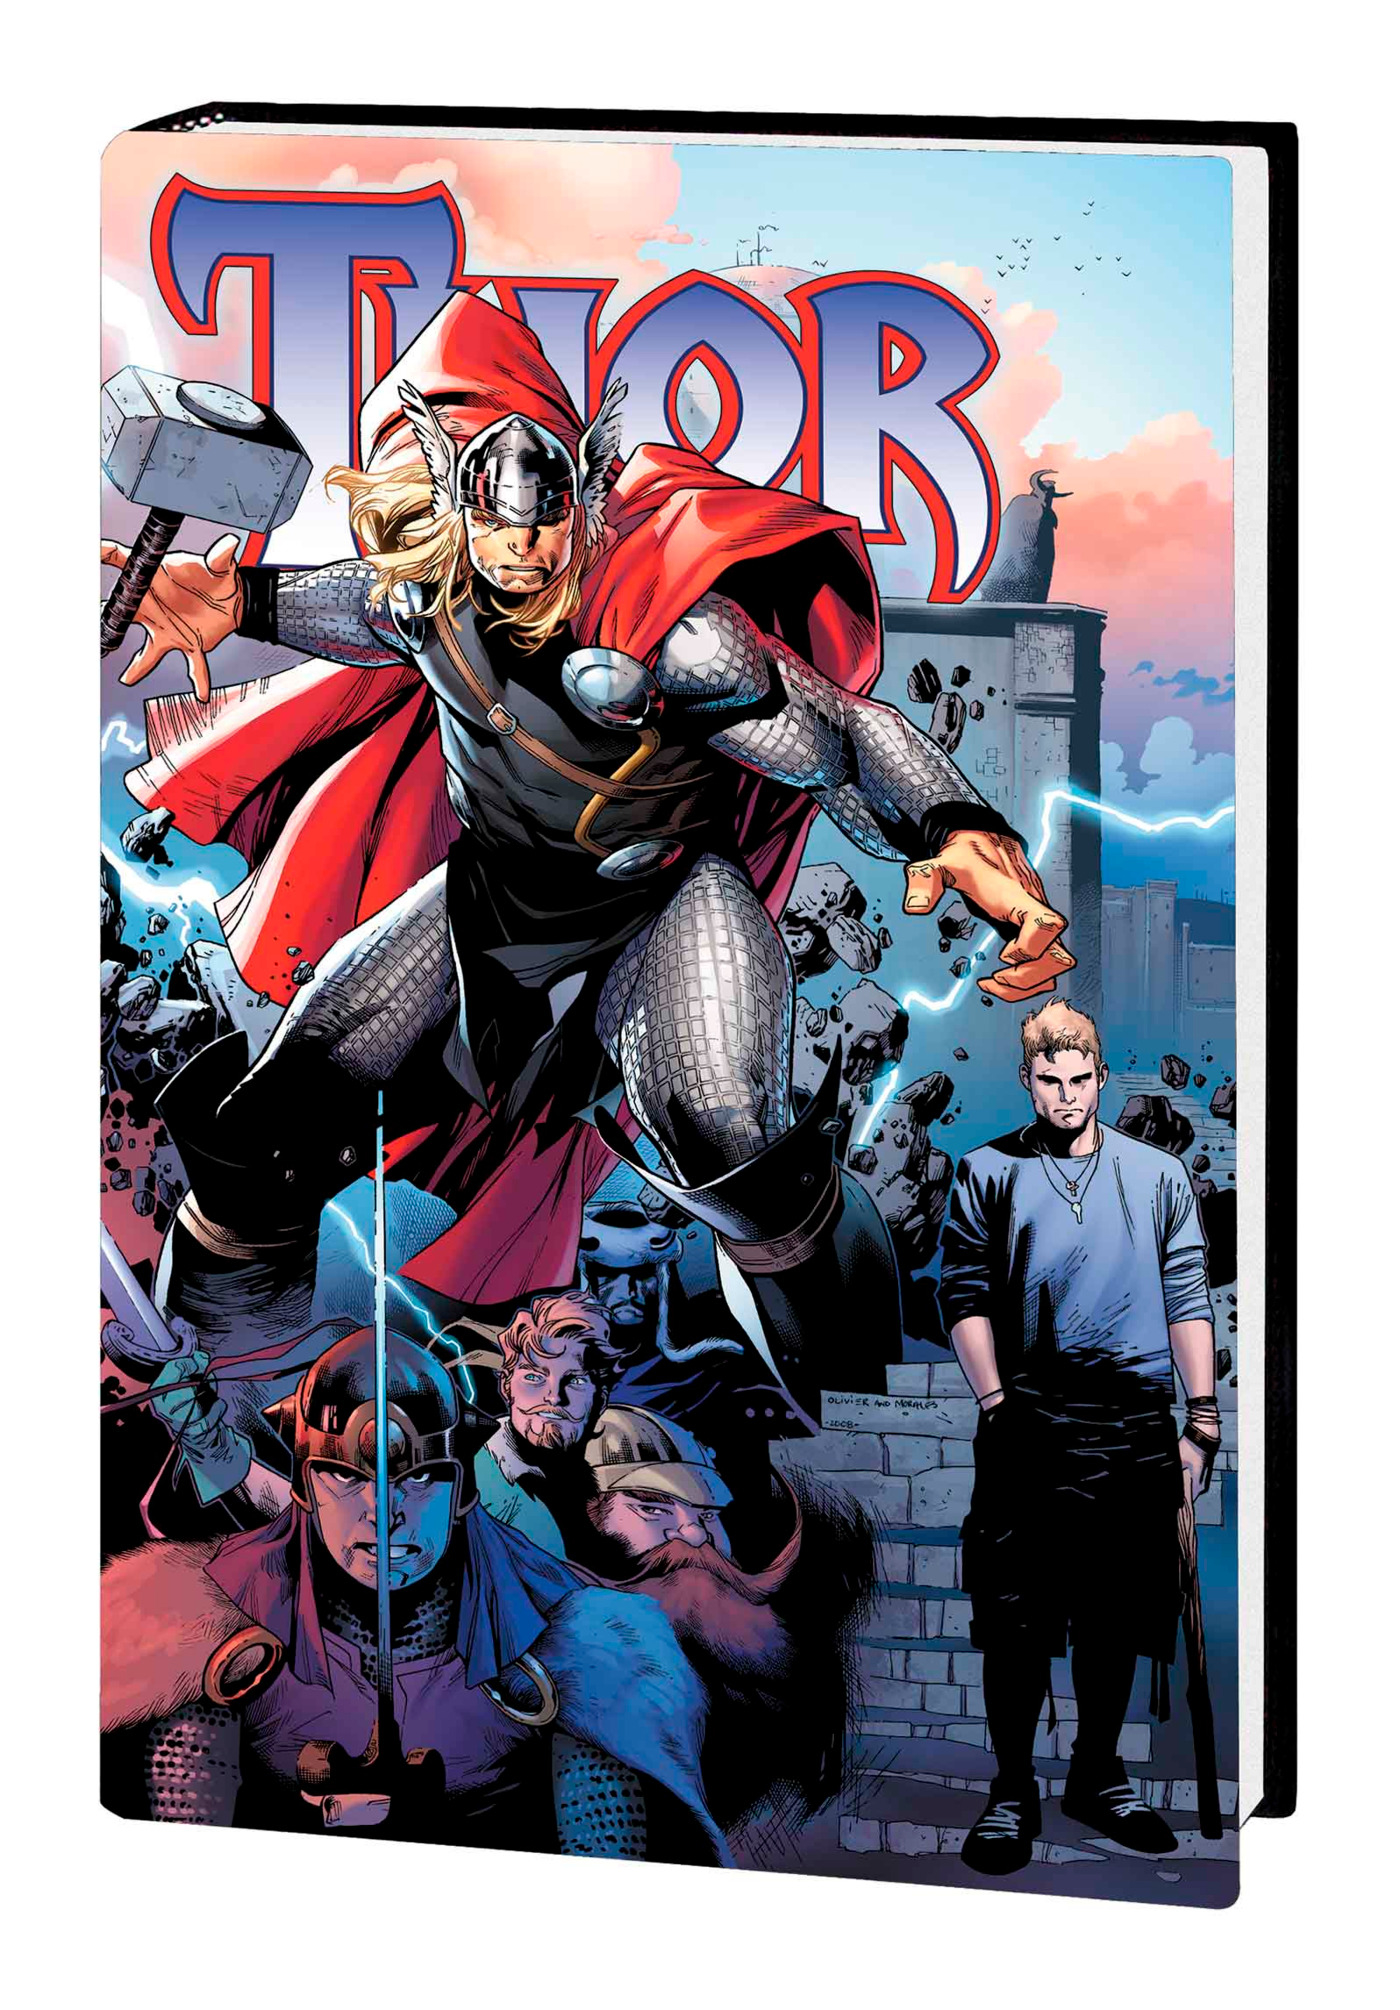 Thor by Straczynski & Gillen Omnibus (Direct Market Variant)